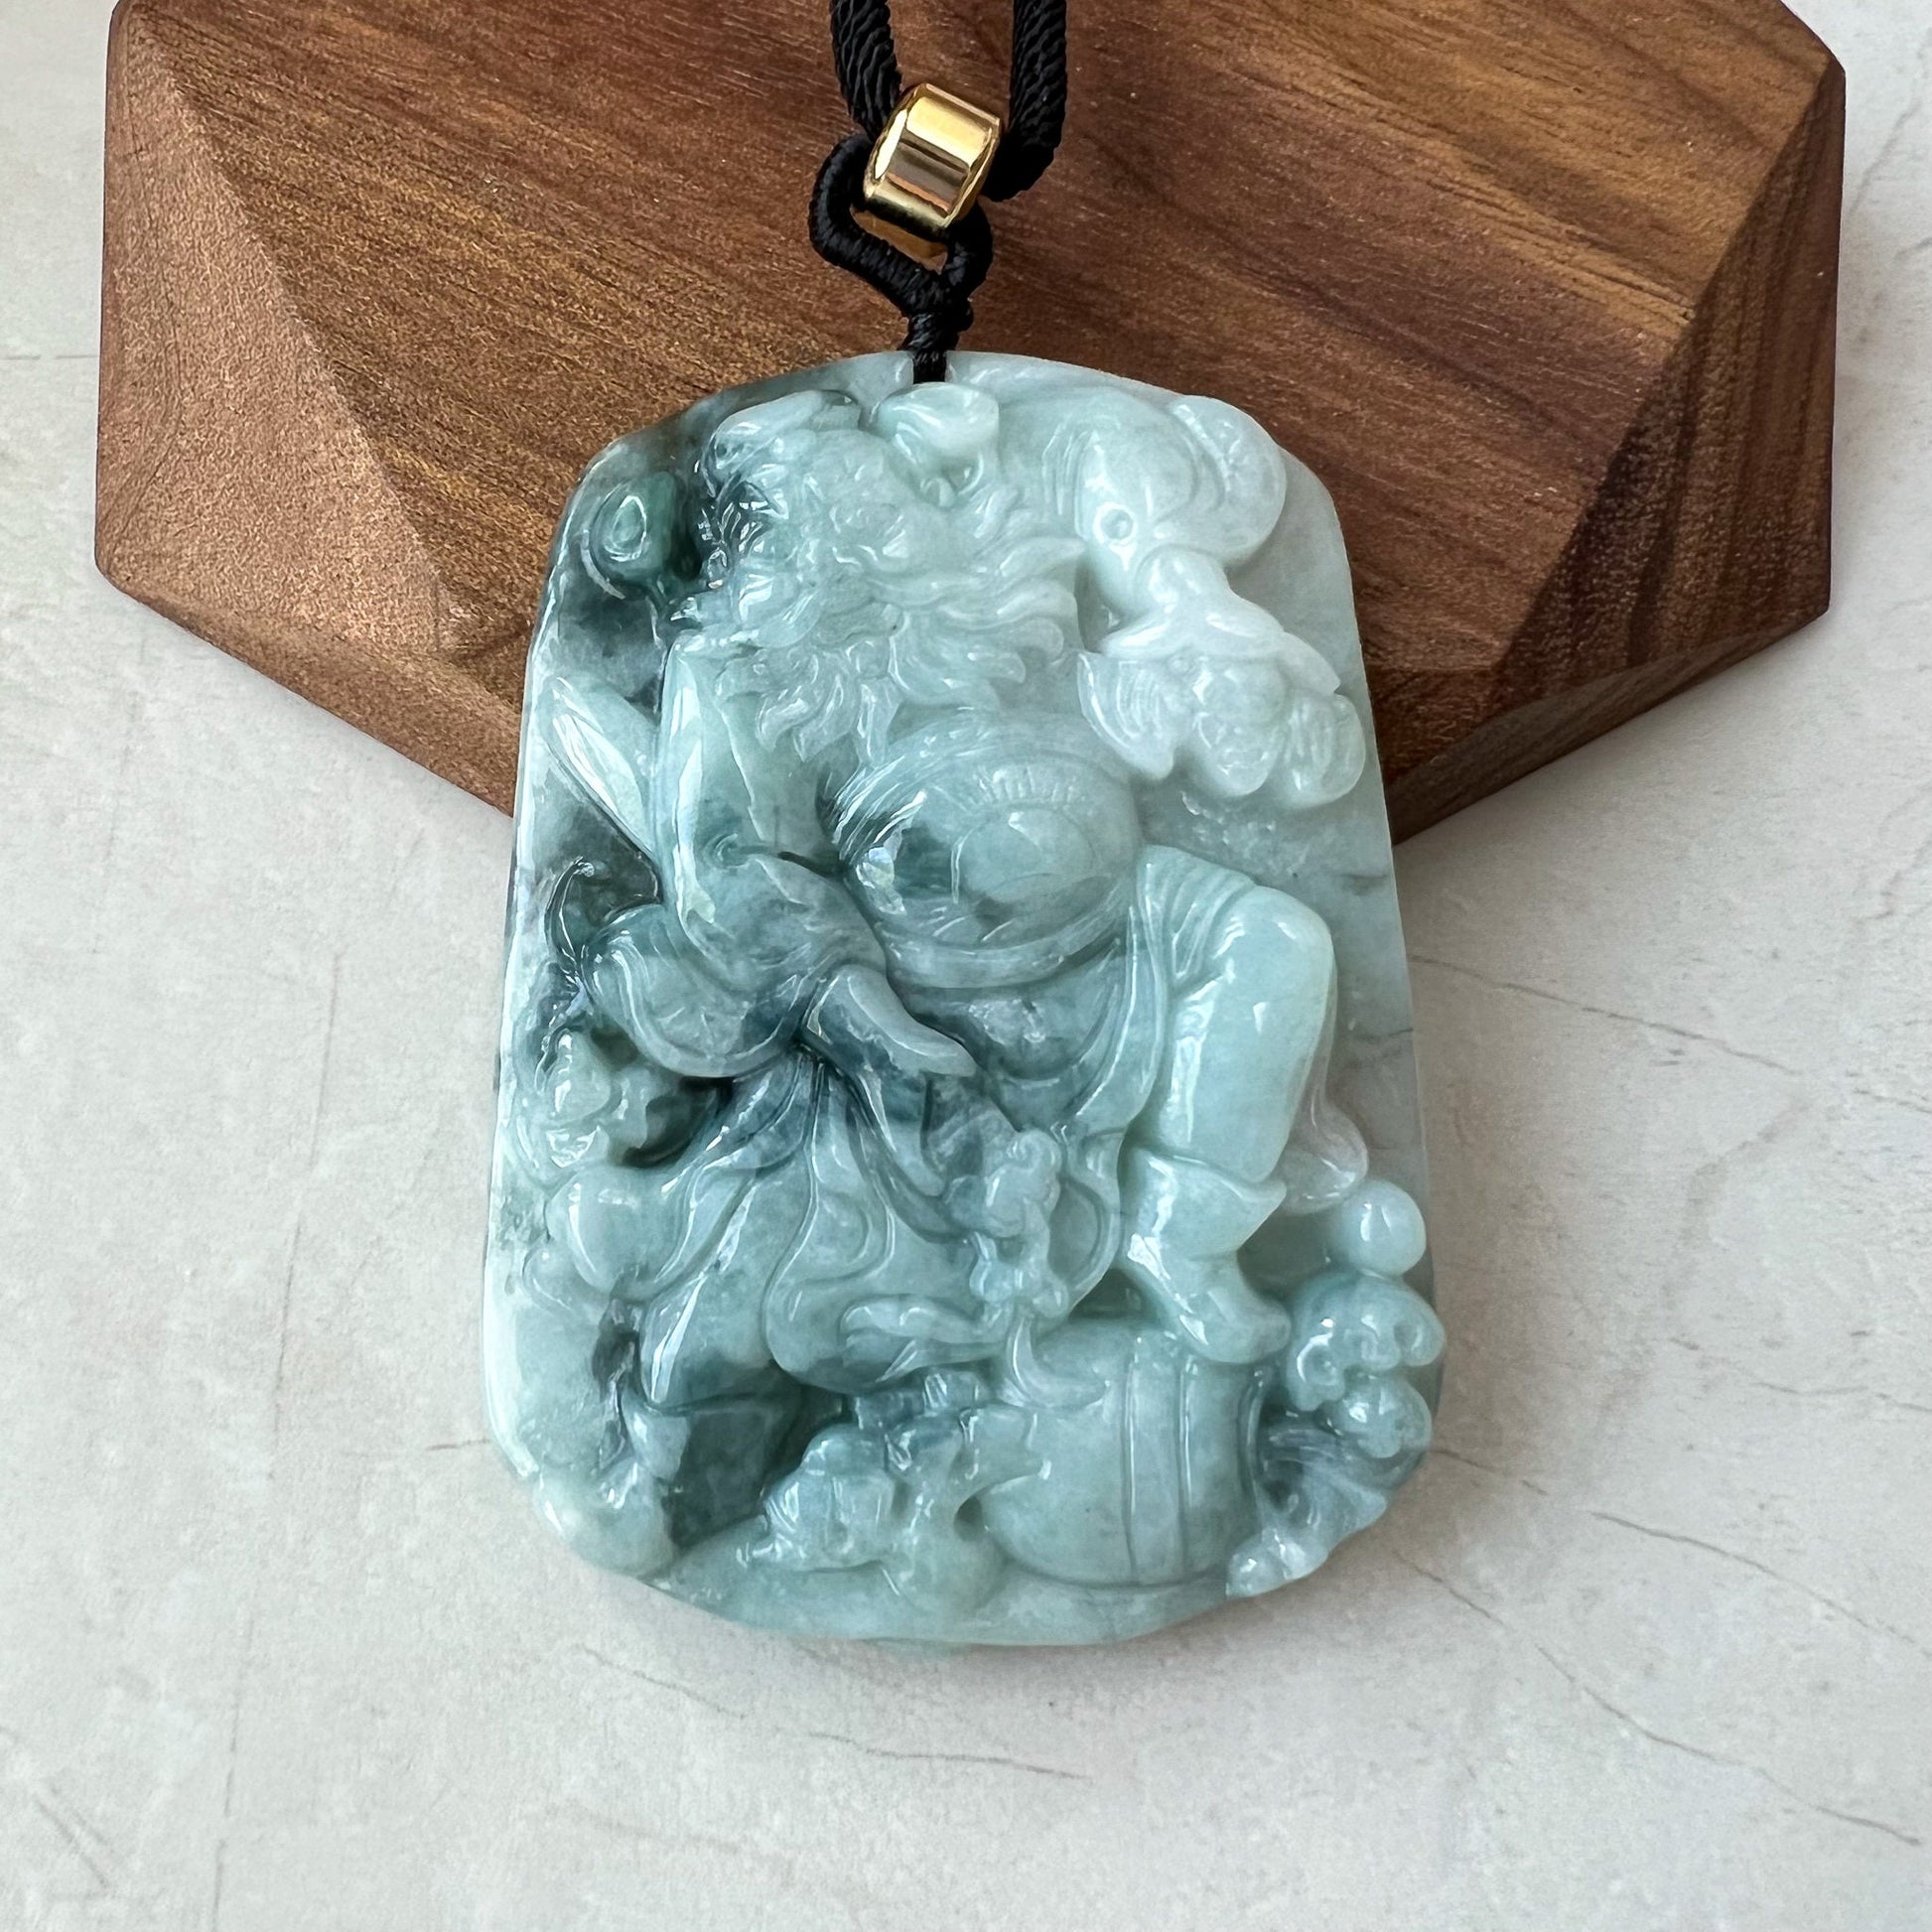 Zhong Kui, , Jadeite Jade Pendant Necklace, Chinese Mythology God of Protection, YJ-0622-0379118 - AriaDesignCollection